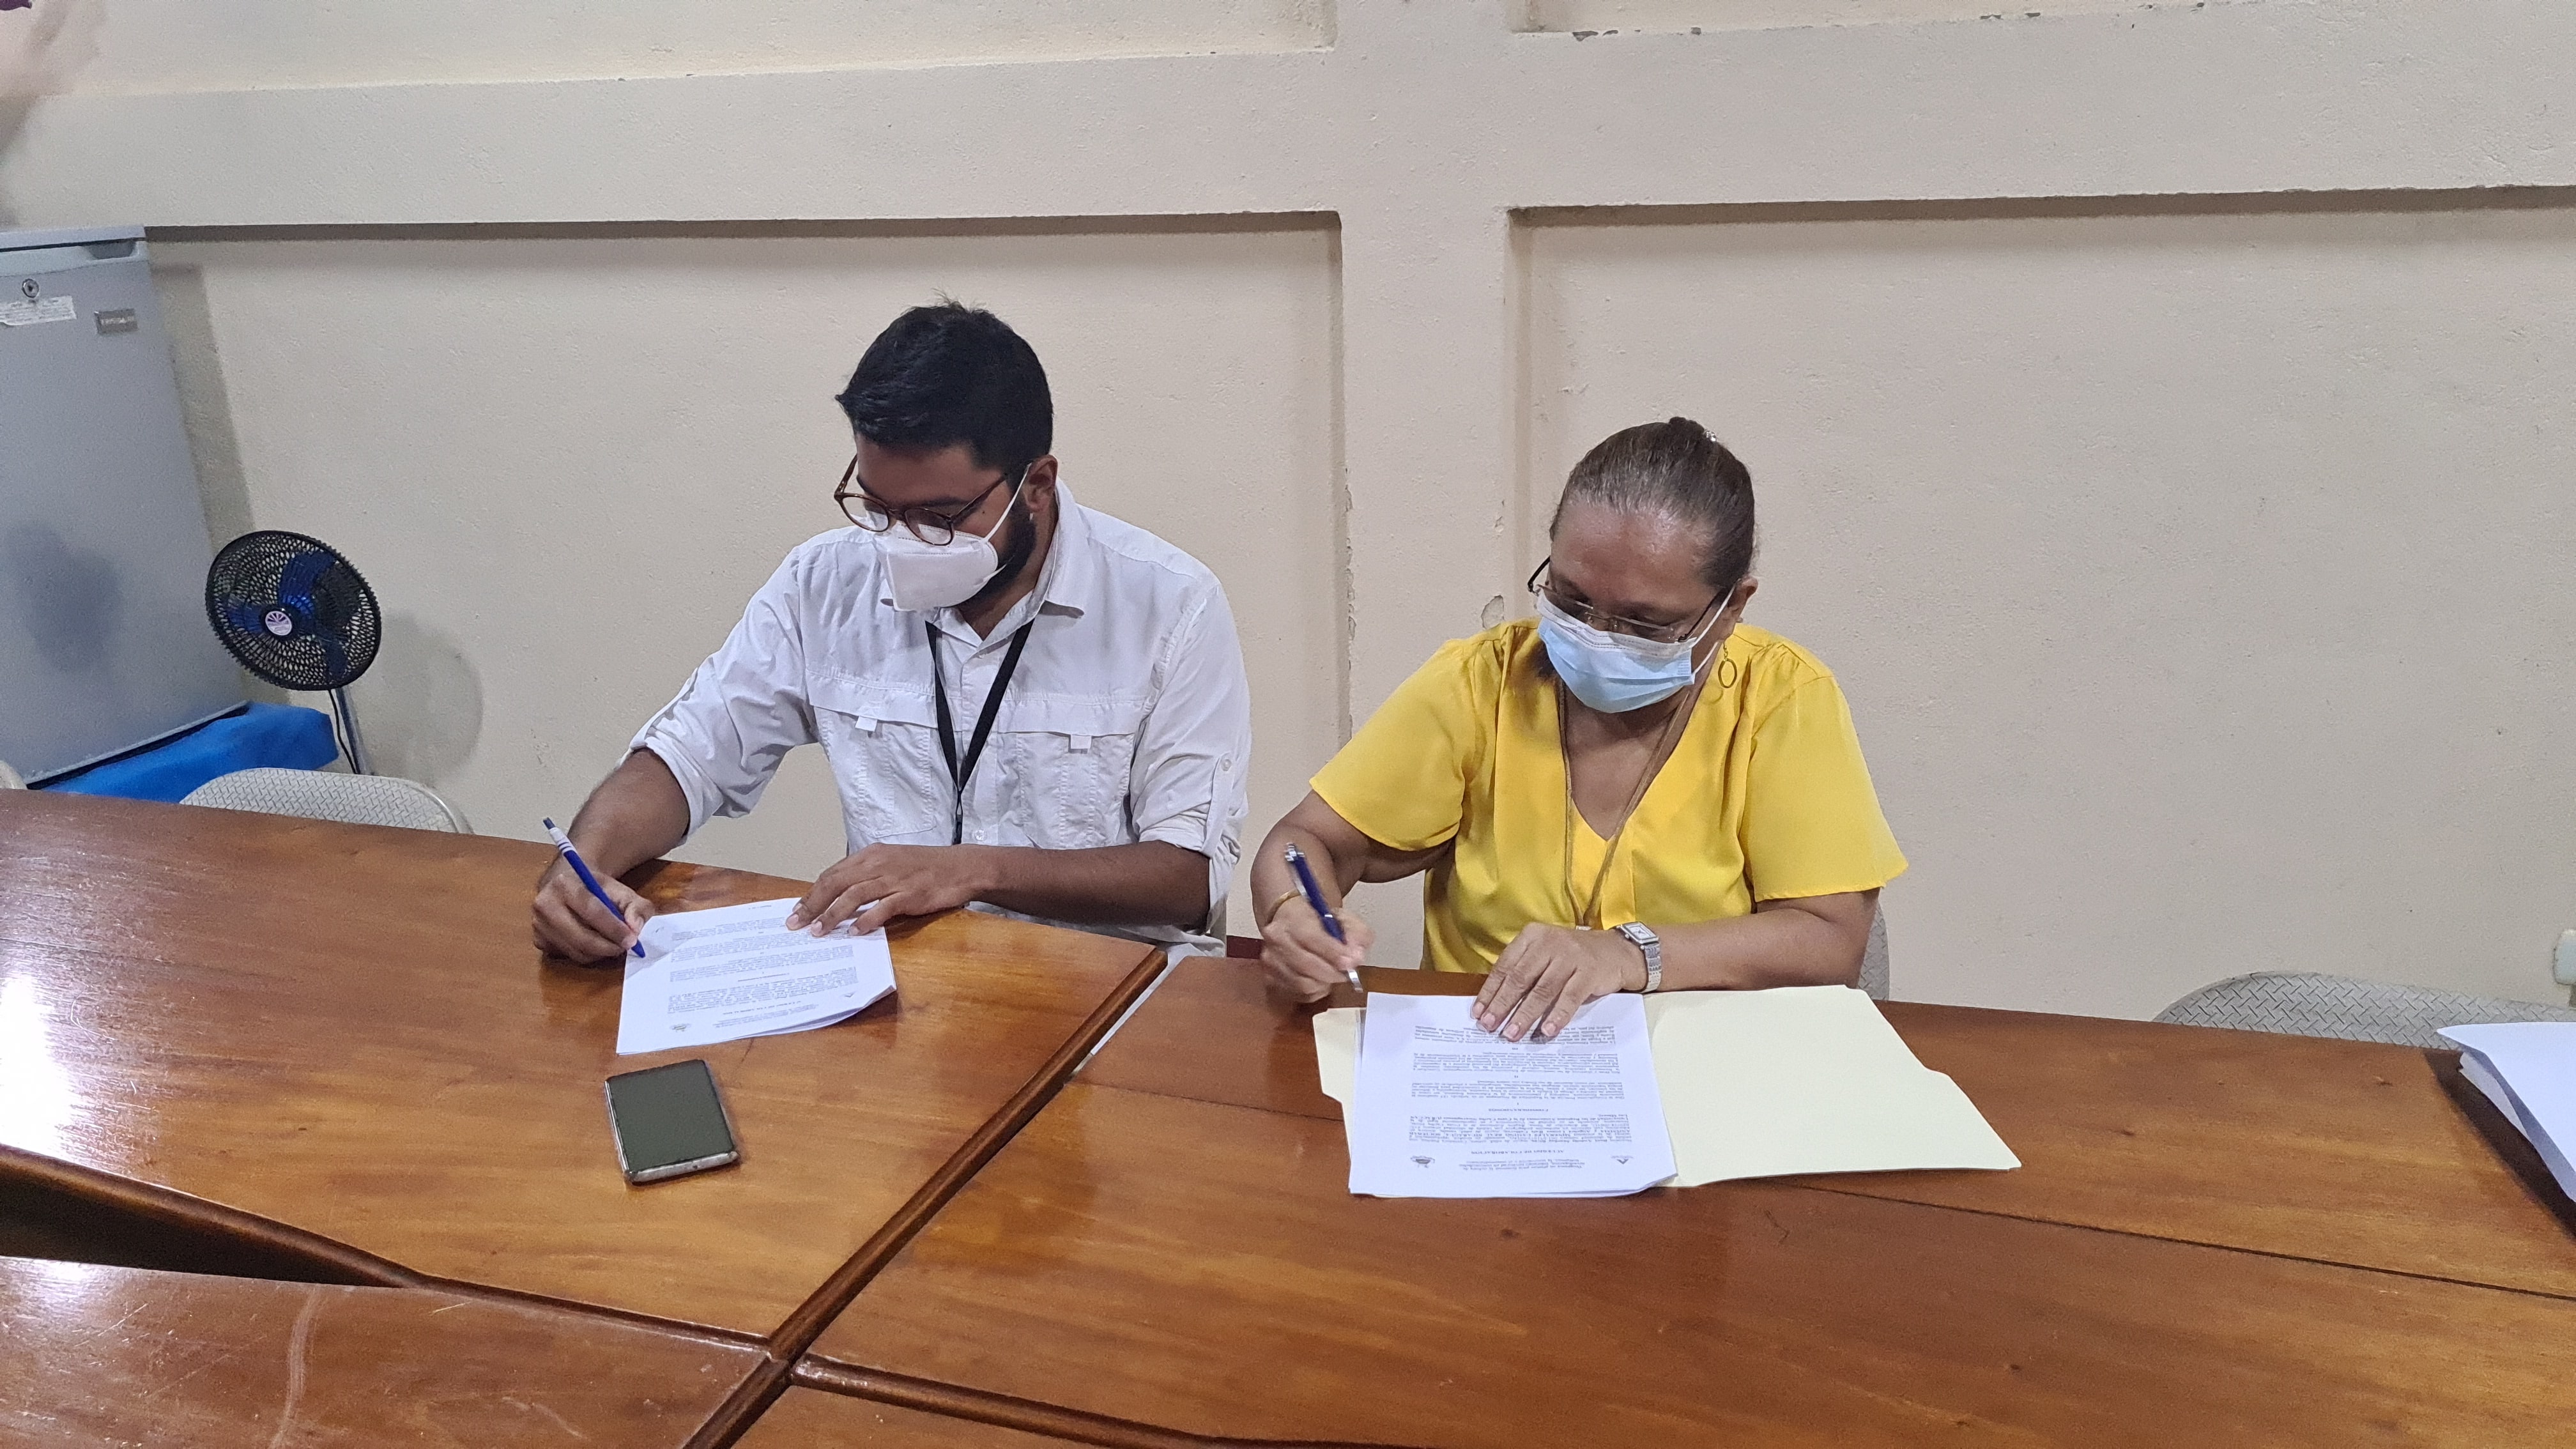  URACCAN y la empresa de minerales Camino Real Nicaragua firman carta de entendimiento